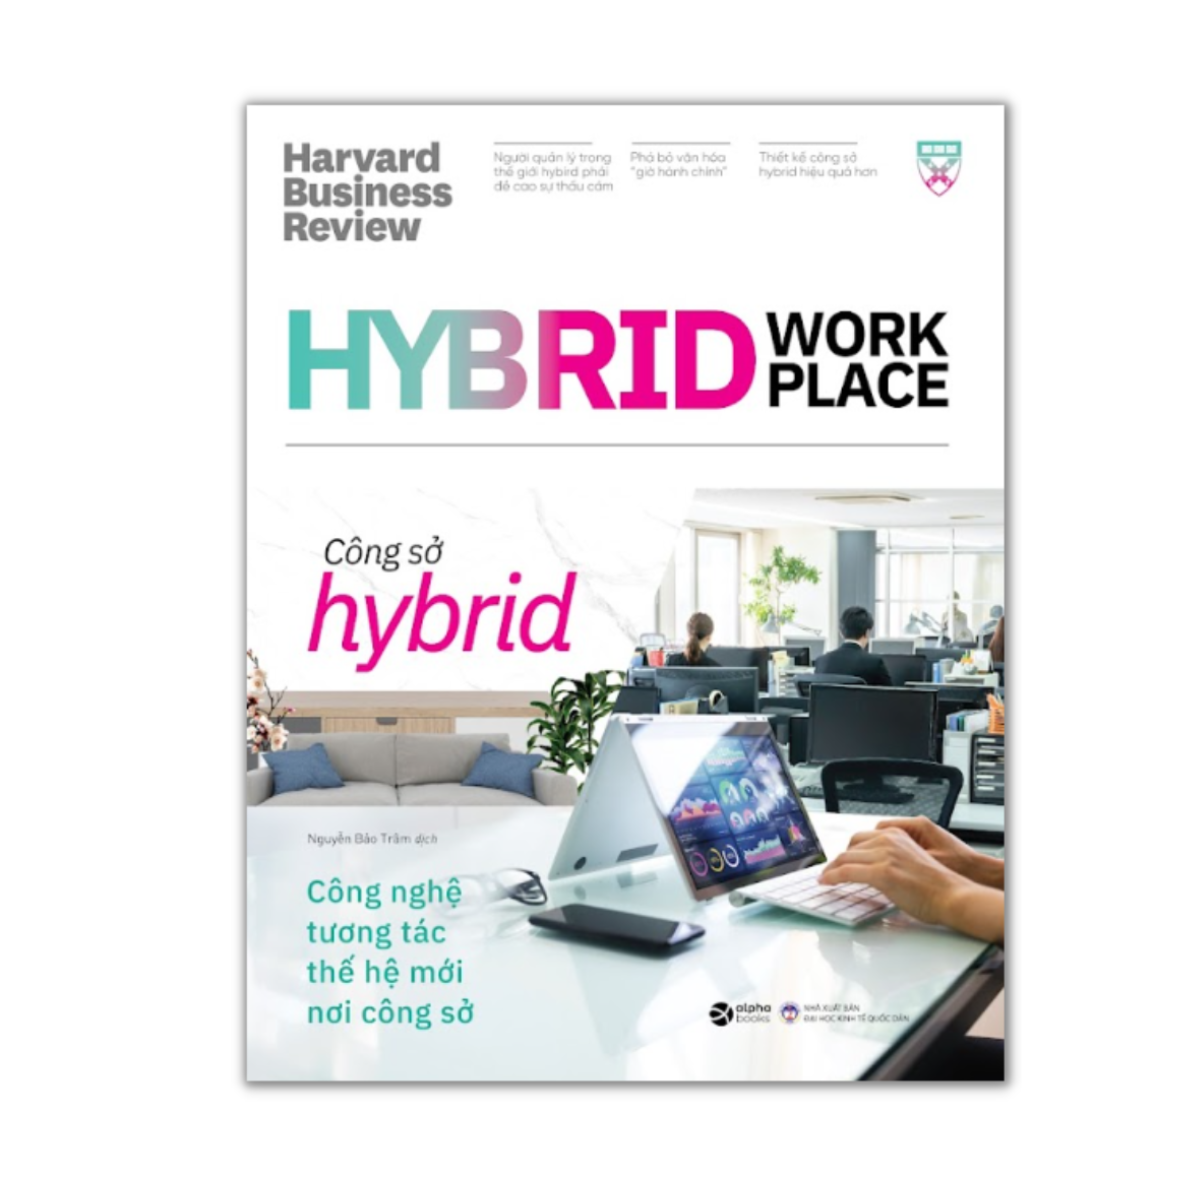 HBR On Hybrid Work Place: Công Sở Hybrid - Công Nghệ Tương Tác Thế Hệ Mới Nơi Công Sở